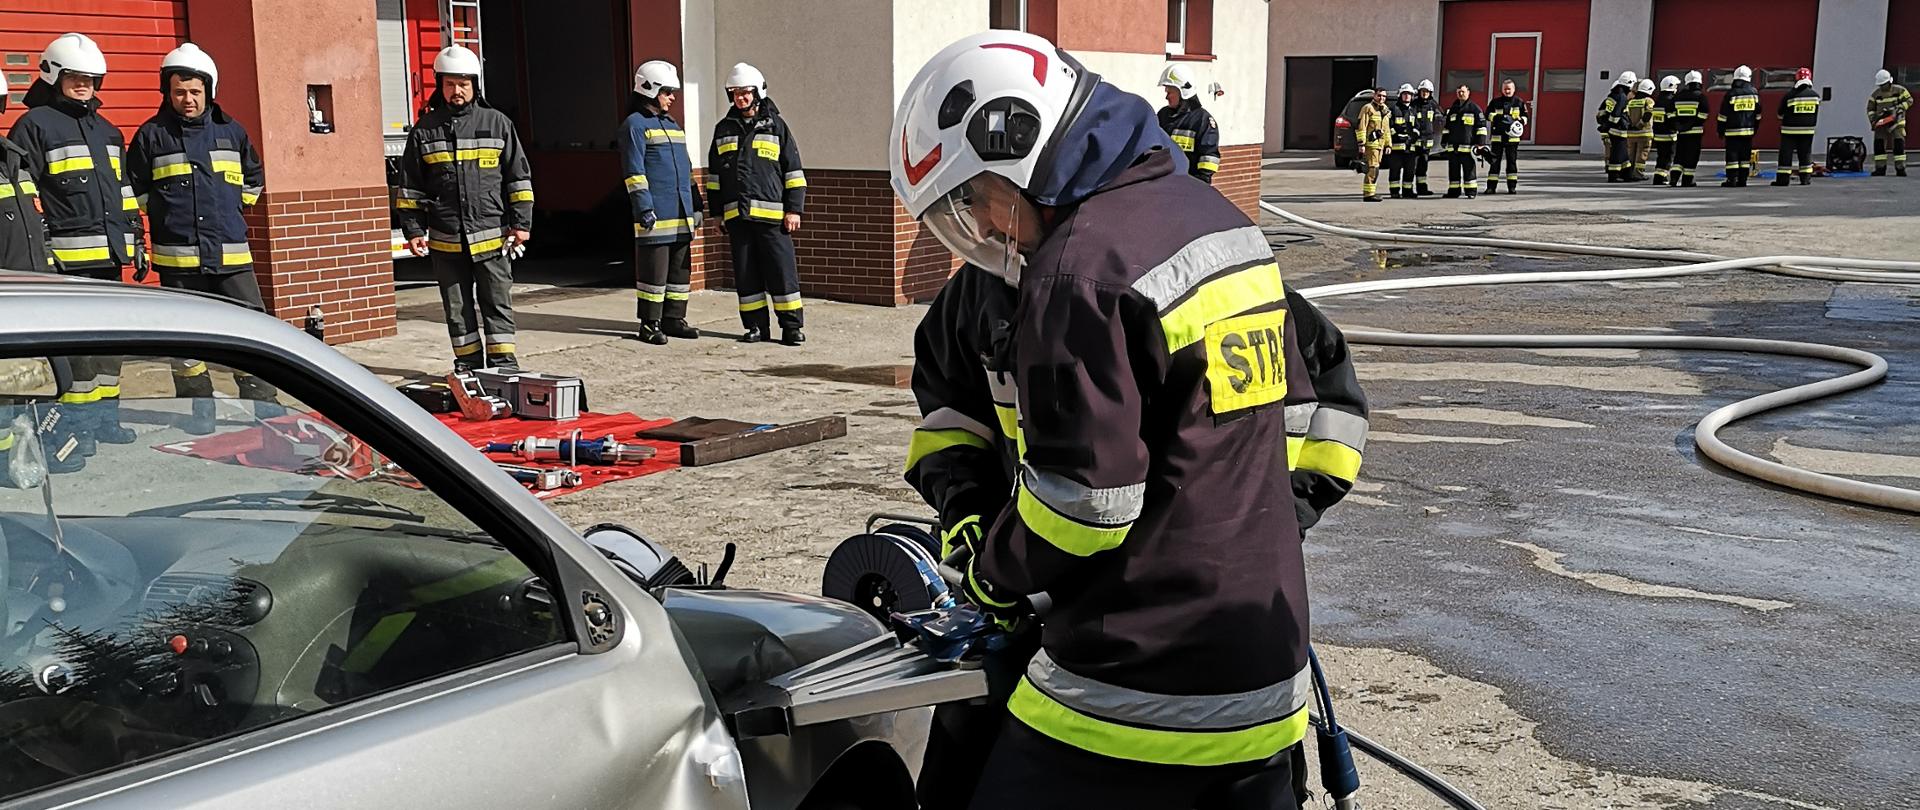 Egzamin praktyczny - strażacy OSP wykonują dostęp do uwięzionej osoby we wraku samochodu